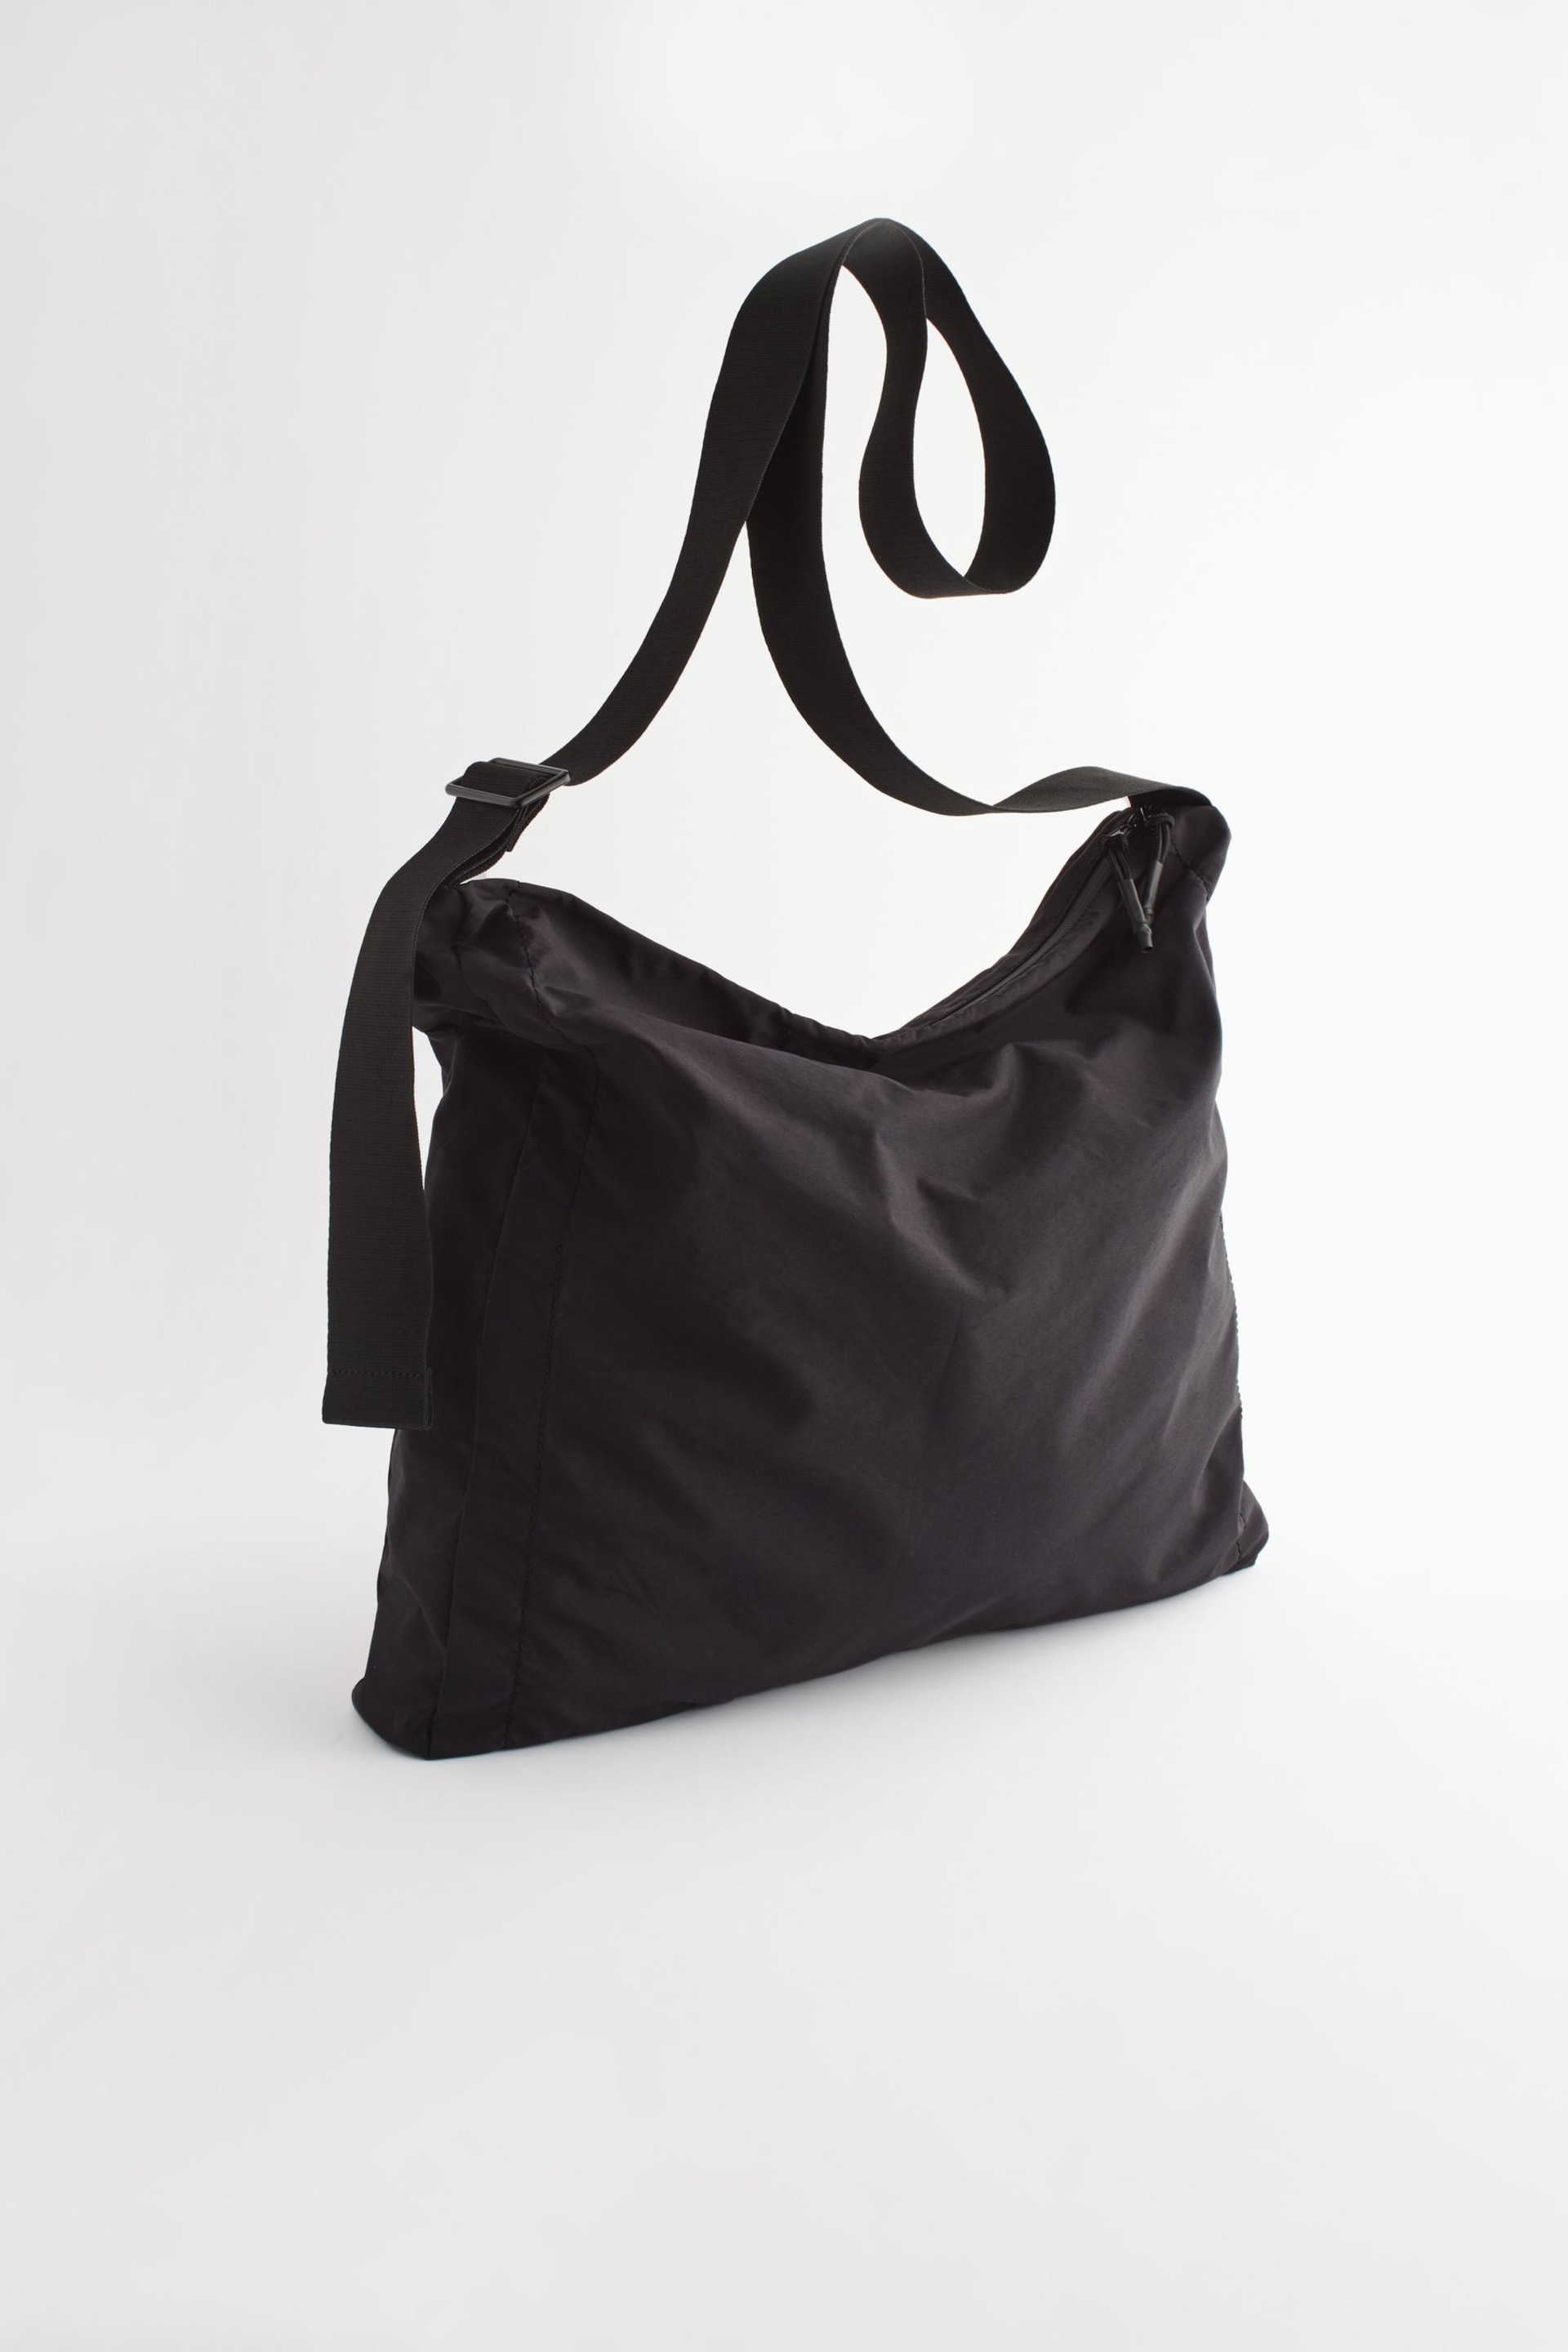 Black Nylon Messenger Bag - Image 3 of 7